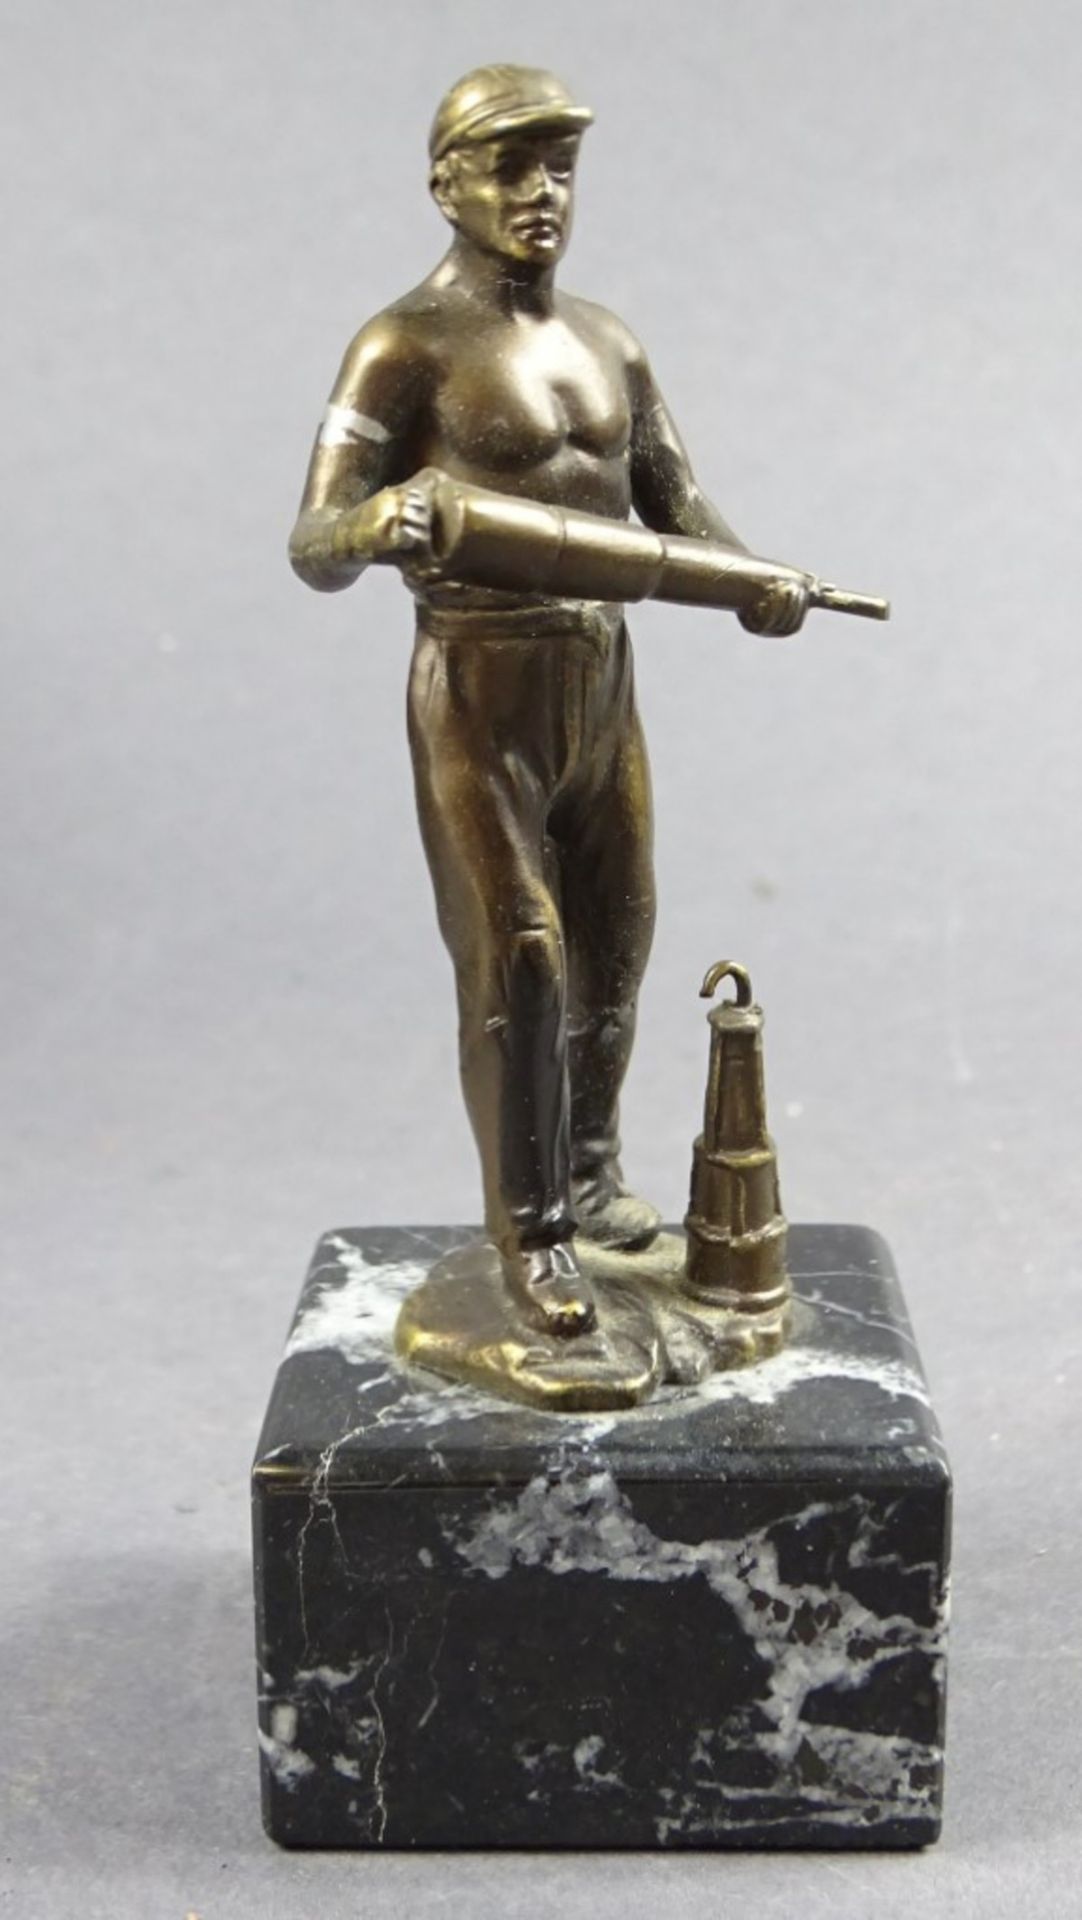 Statuette auf Steinsockel, Werksmann, 1930, H. 11,5 cm, Armbinde nicht mehr vorhanden, weitere